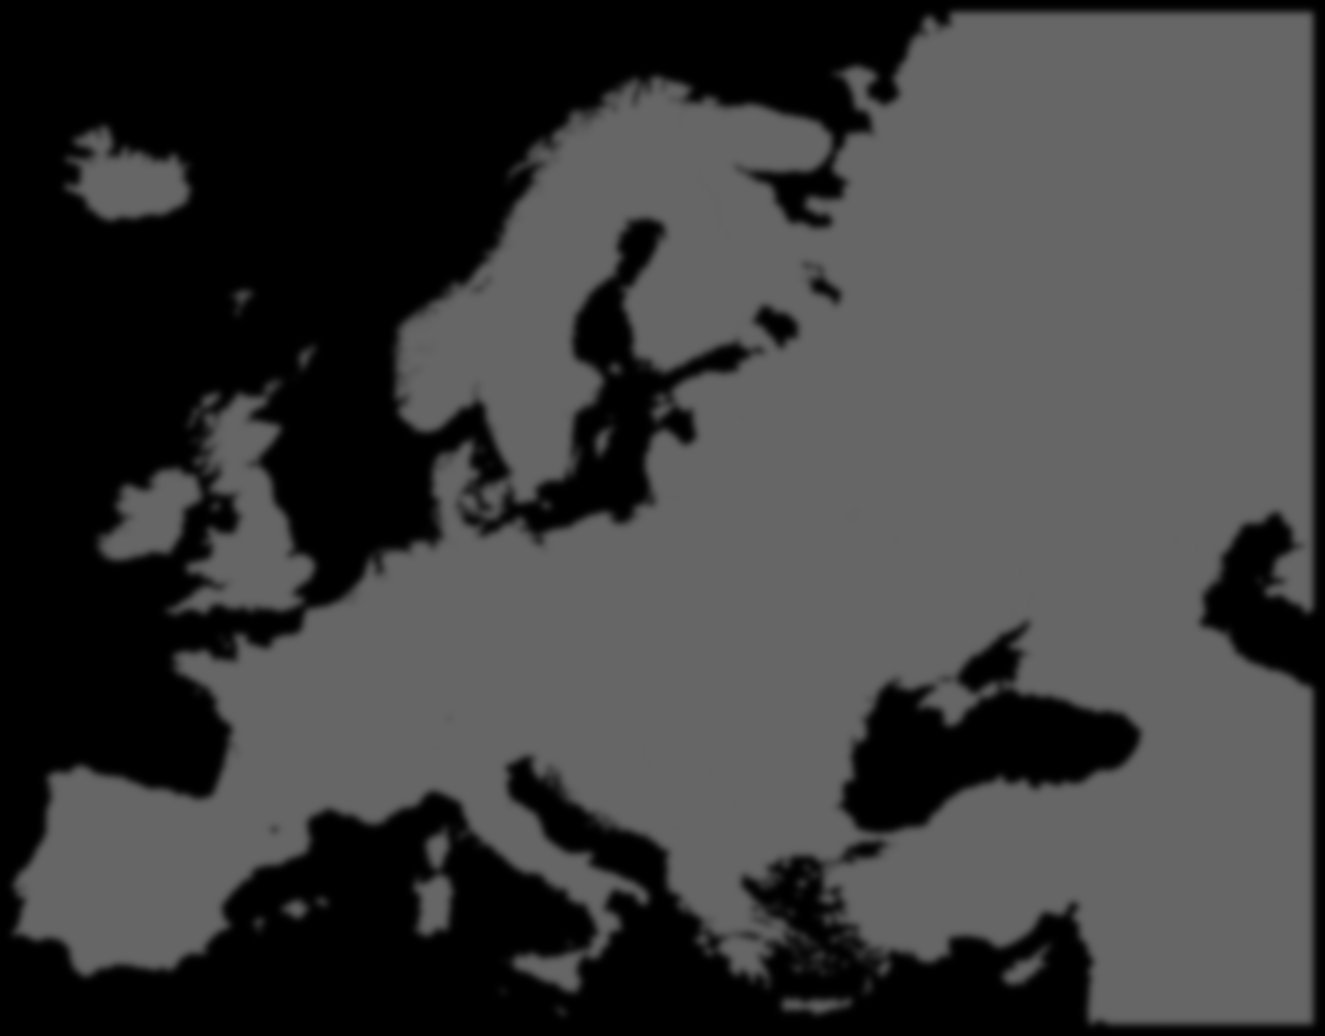 Kienbaum - Evropa Celkové hrubé roční příjmy vedoucího úseku IT v evropském srovnání (v 000 EURO) Rusko 110 140 Poznámky:» Ve společnostech s více než 500 pracovníky» Reprezentativní pro relace mezi